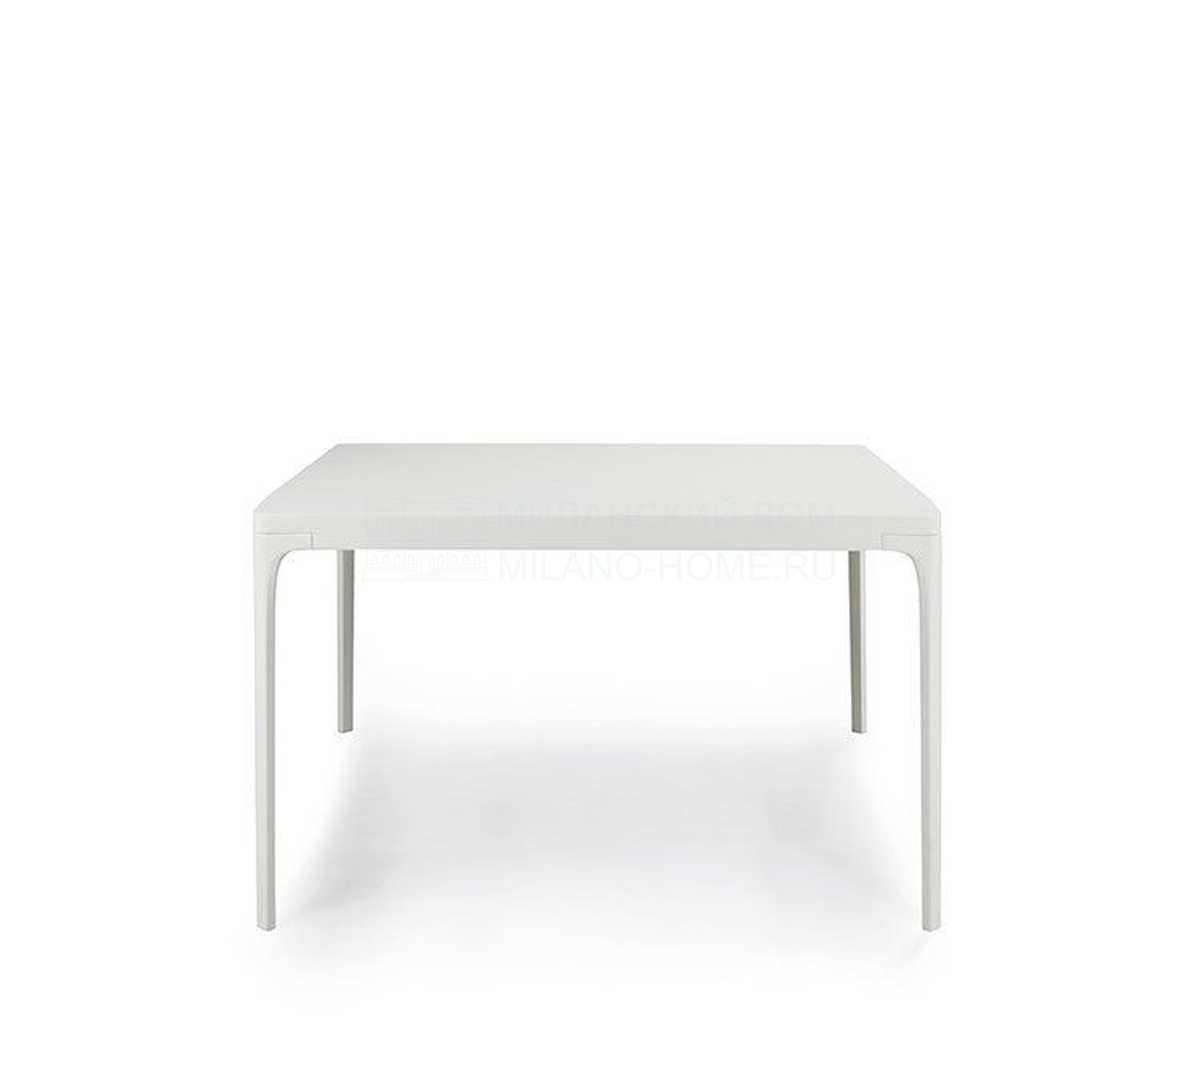 Обеденный стол Play dining table small из Италии фабрики ETHIMO